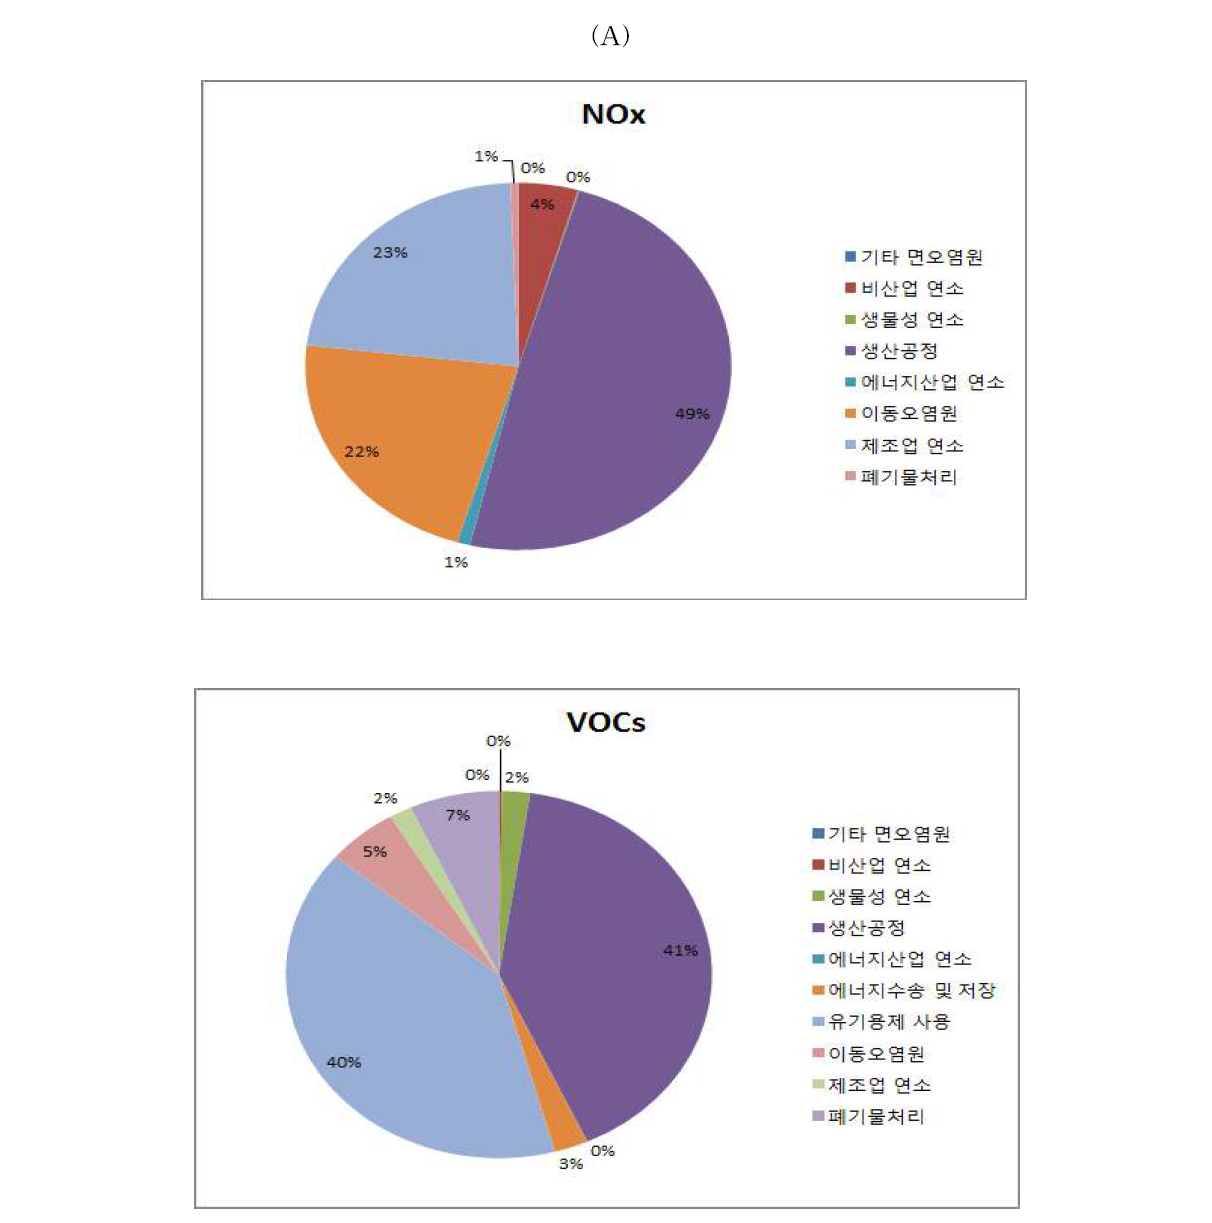 최근 7년간(2006∼2012) 업종별 오염물질(NOx 및 VOCs) 배출량에 대한 기여도.